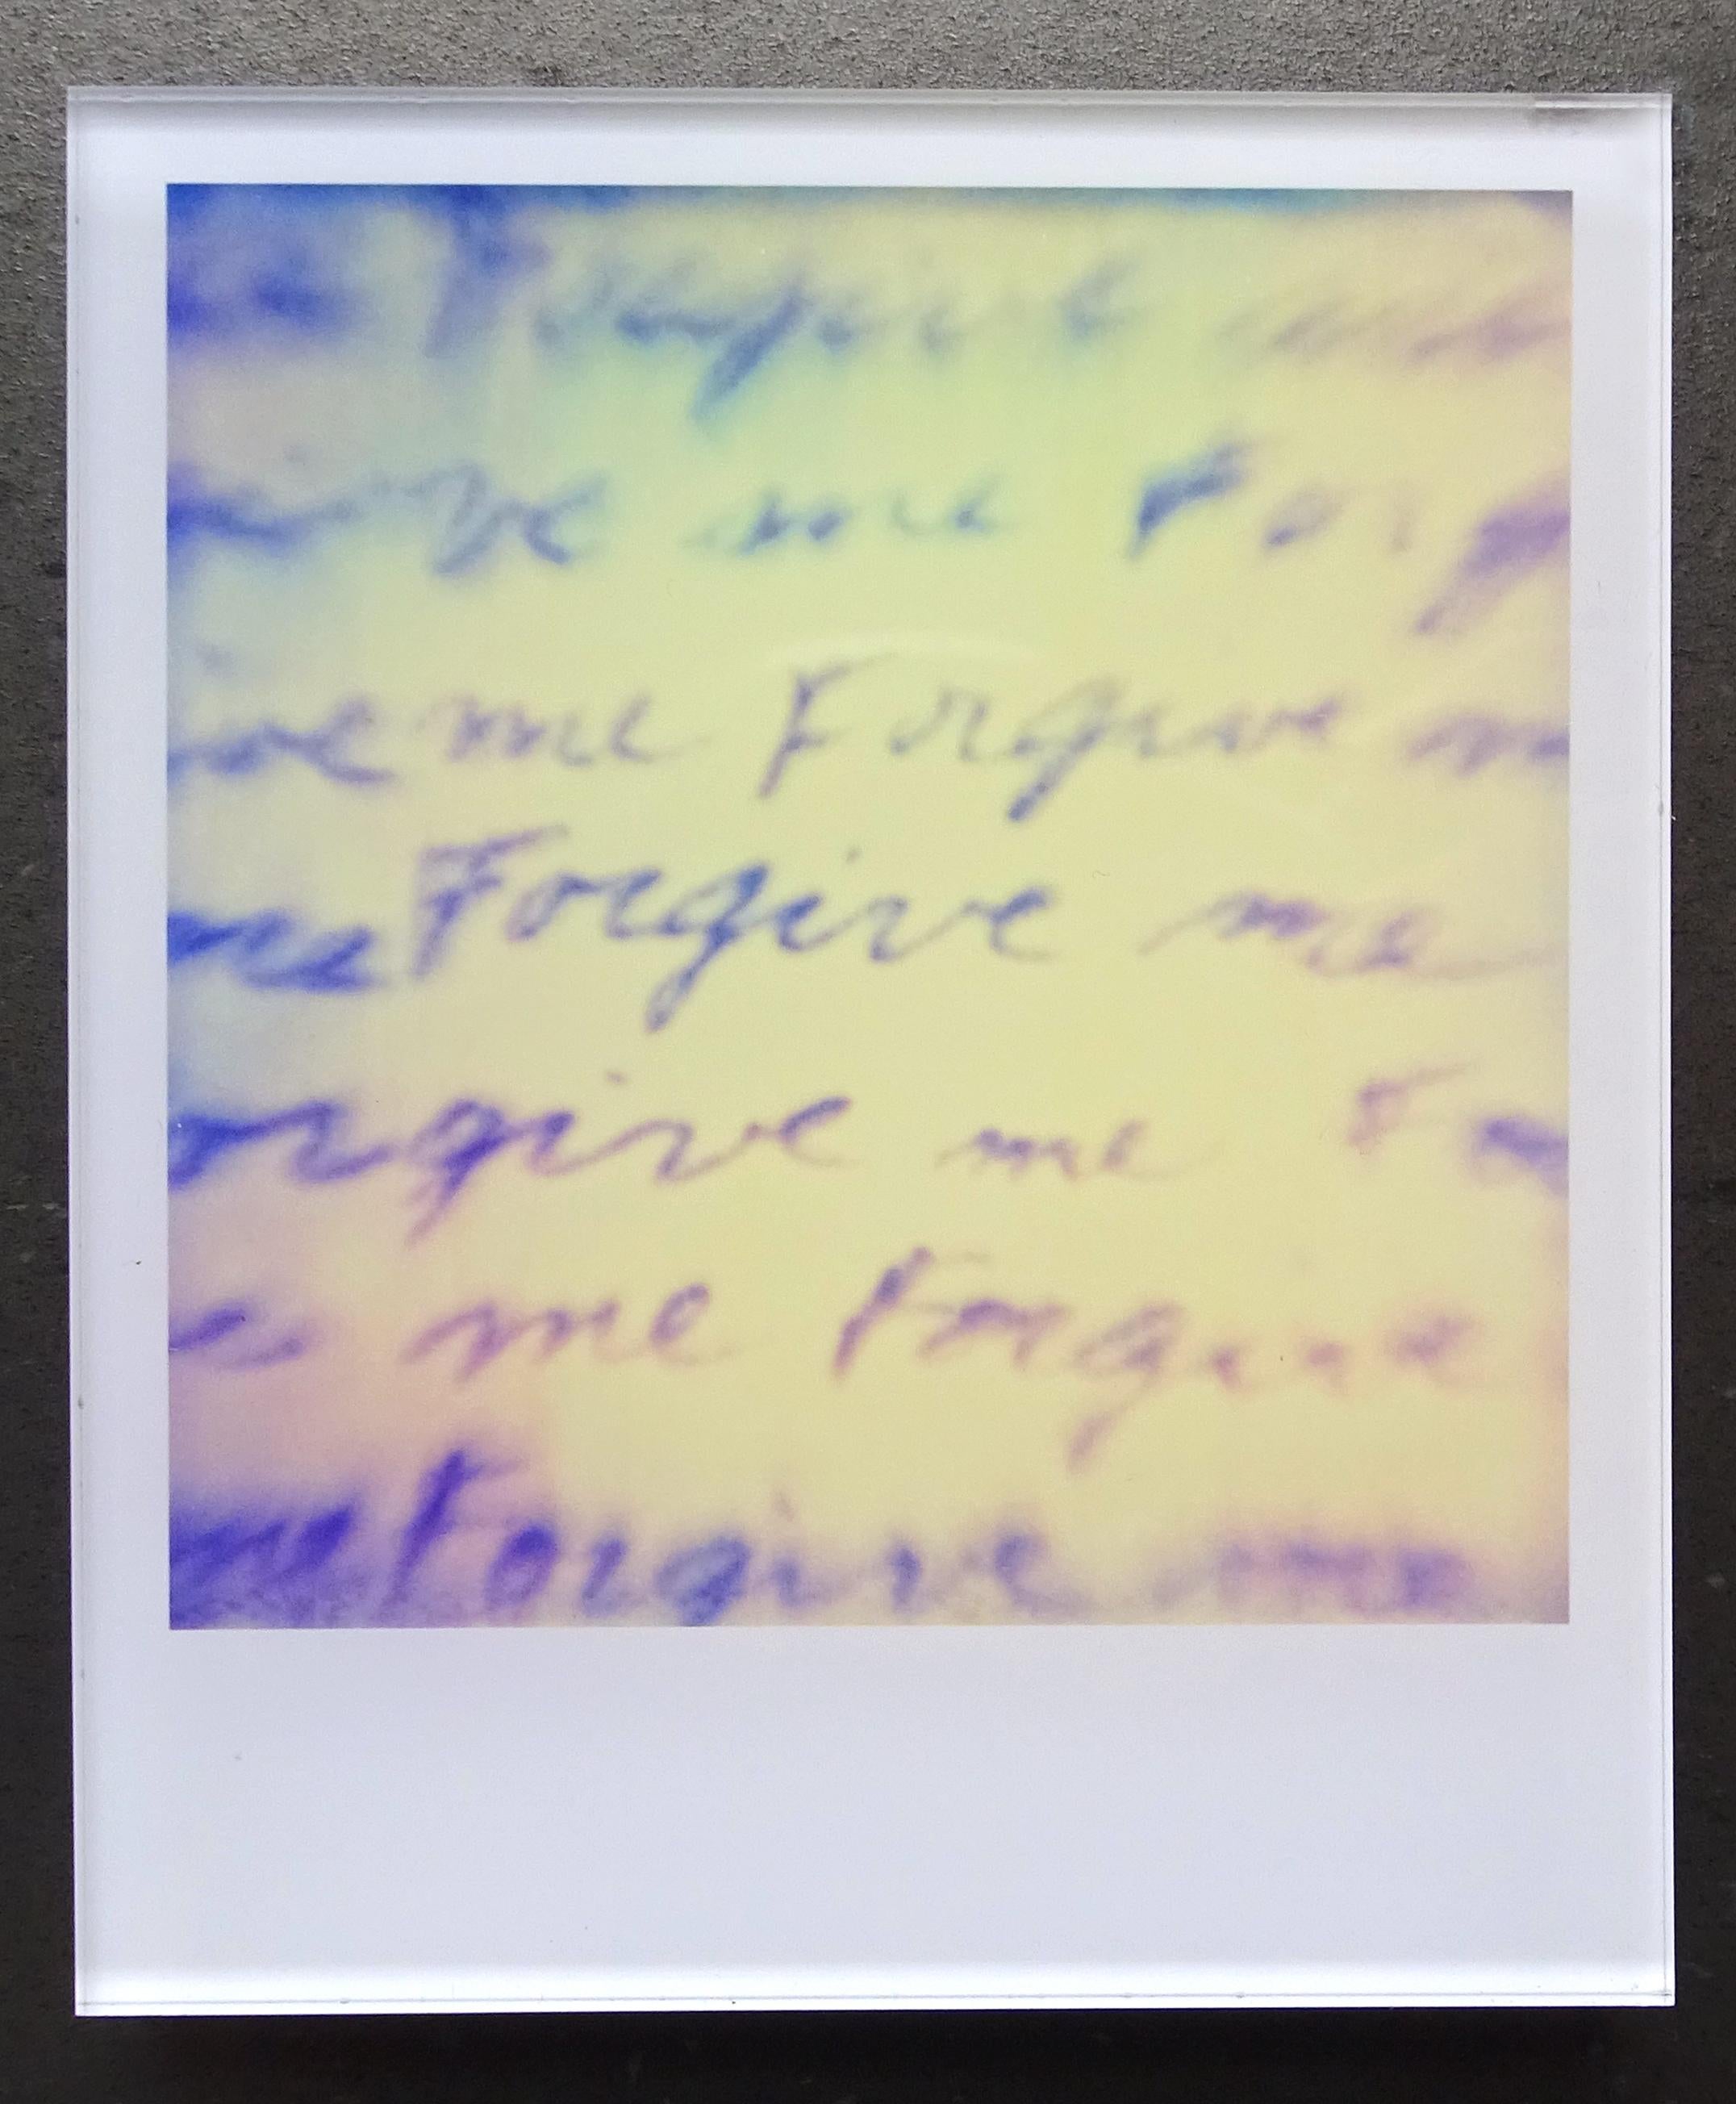 Les Minis de Stefanie Schneider
Coney Island (séjour), 2006

Signé et marque de signature au verso.
Photographies couleur numériques Lambda basées sur le Polaroïd.
Pris en sandwich entre du plexiglas (épaisseur 0,7 cm)

extrait du film "Stay" de